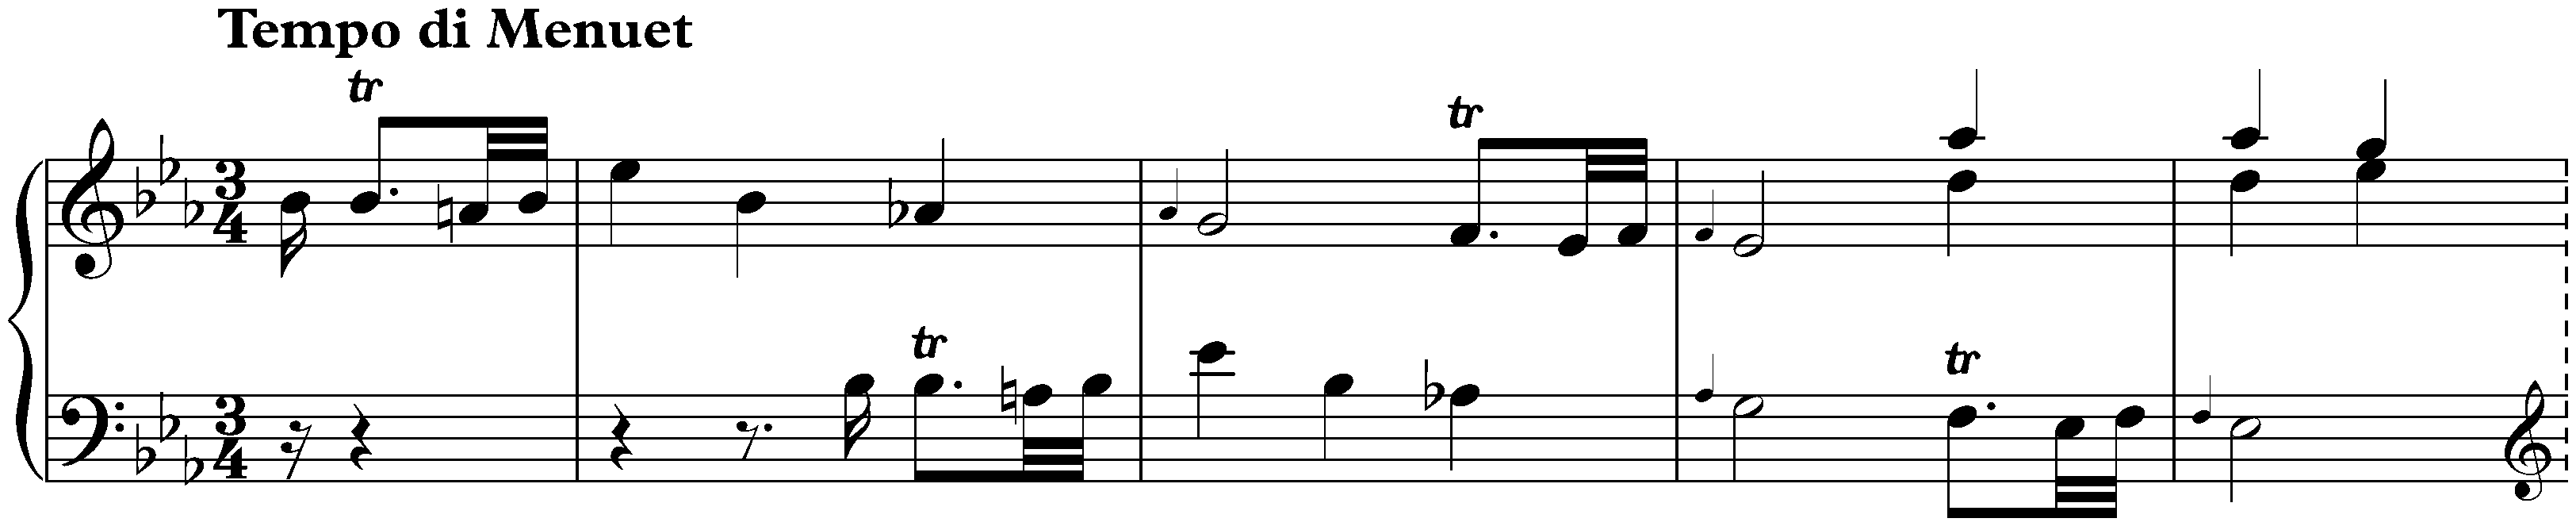 Sonata in E-flat major, Hob. XVI:25; 2. Tempo di Menuet